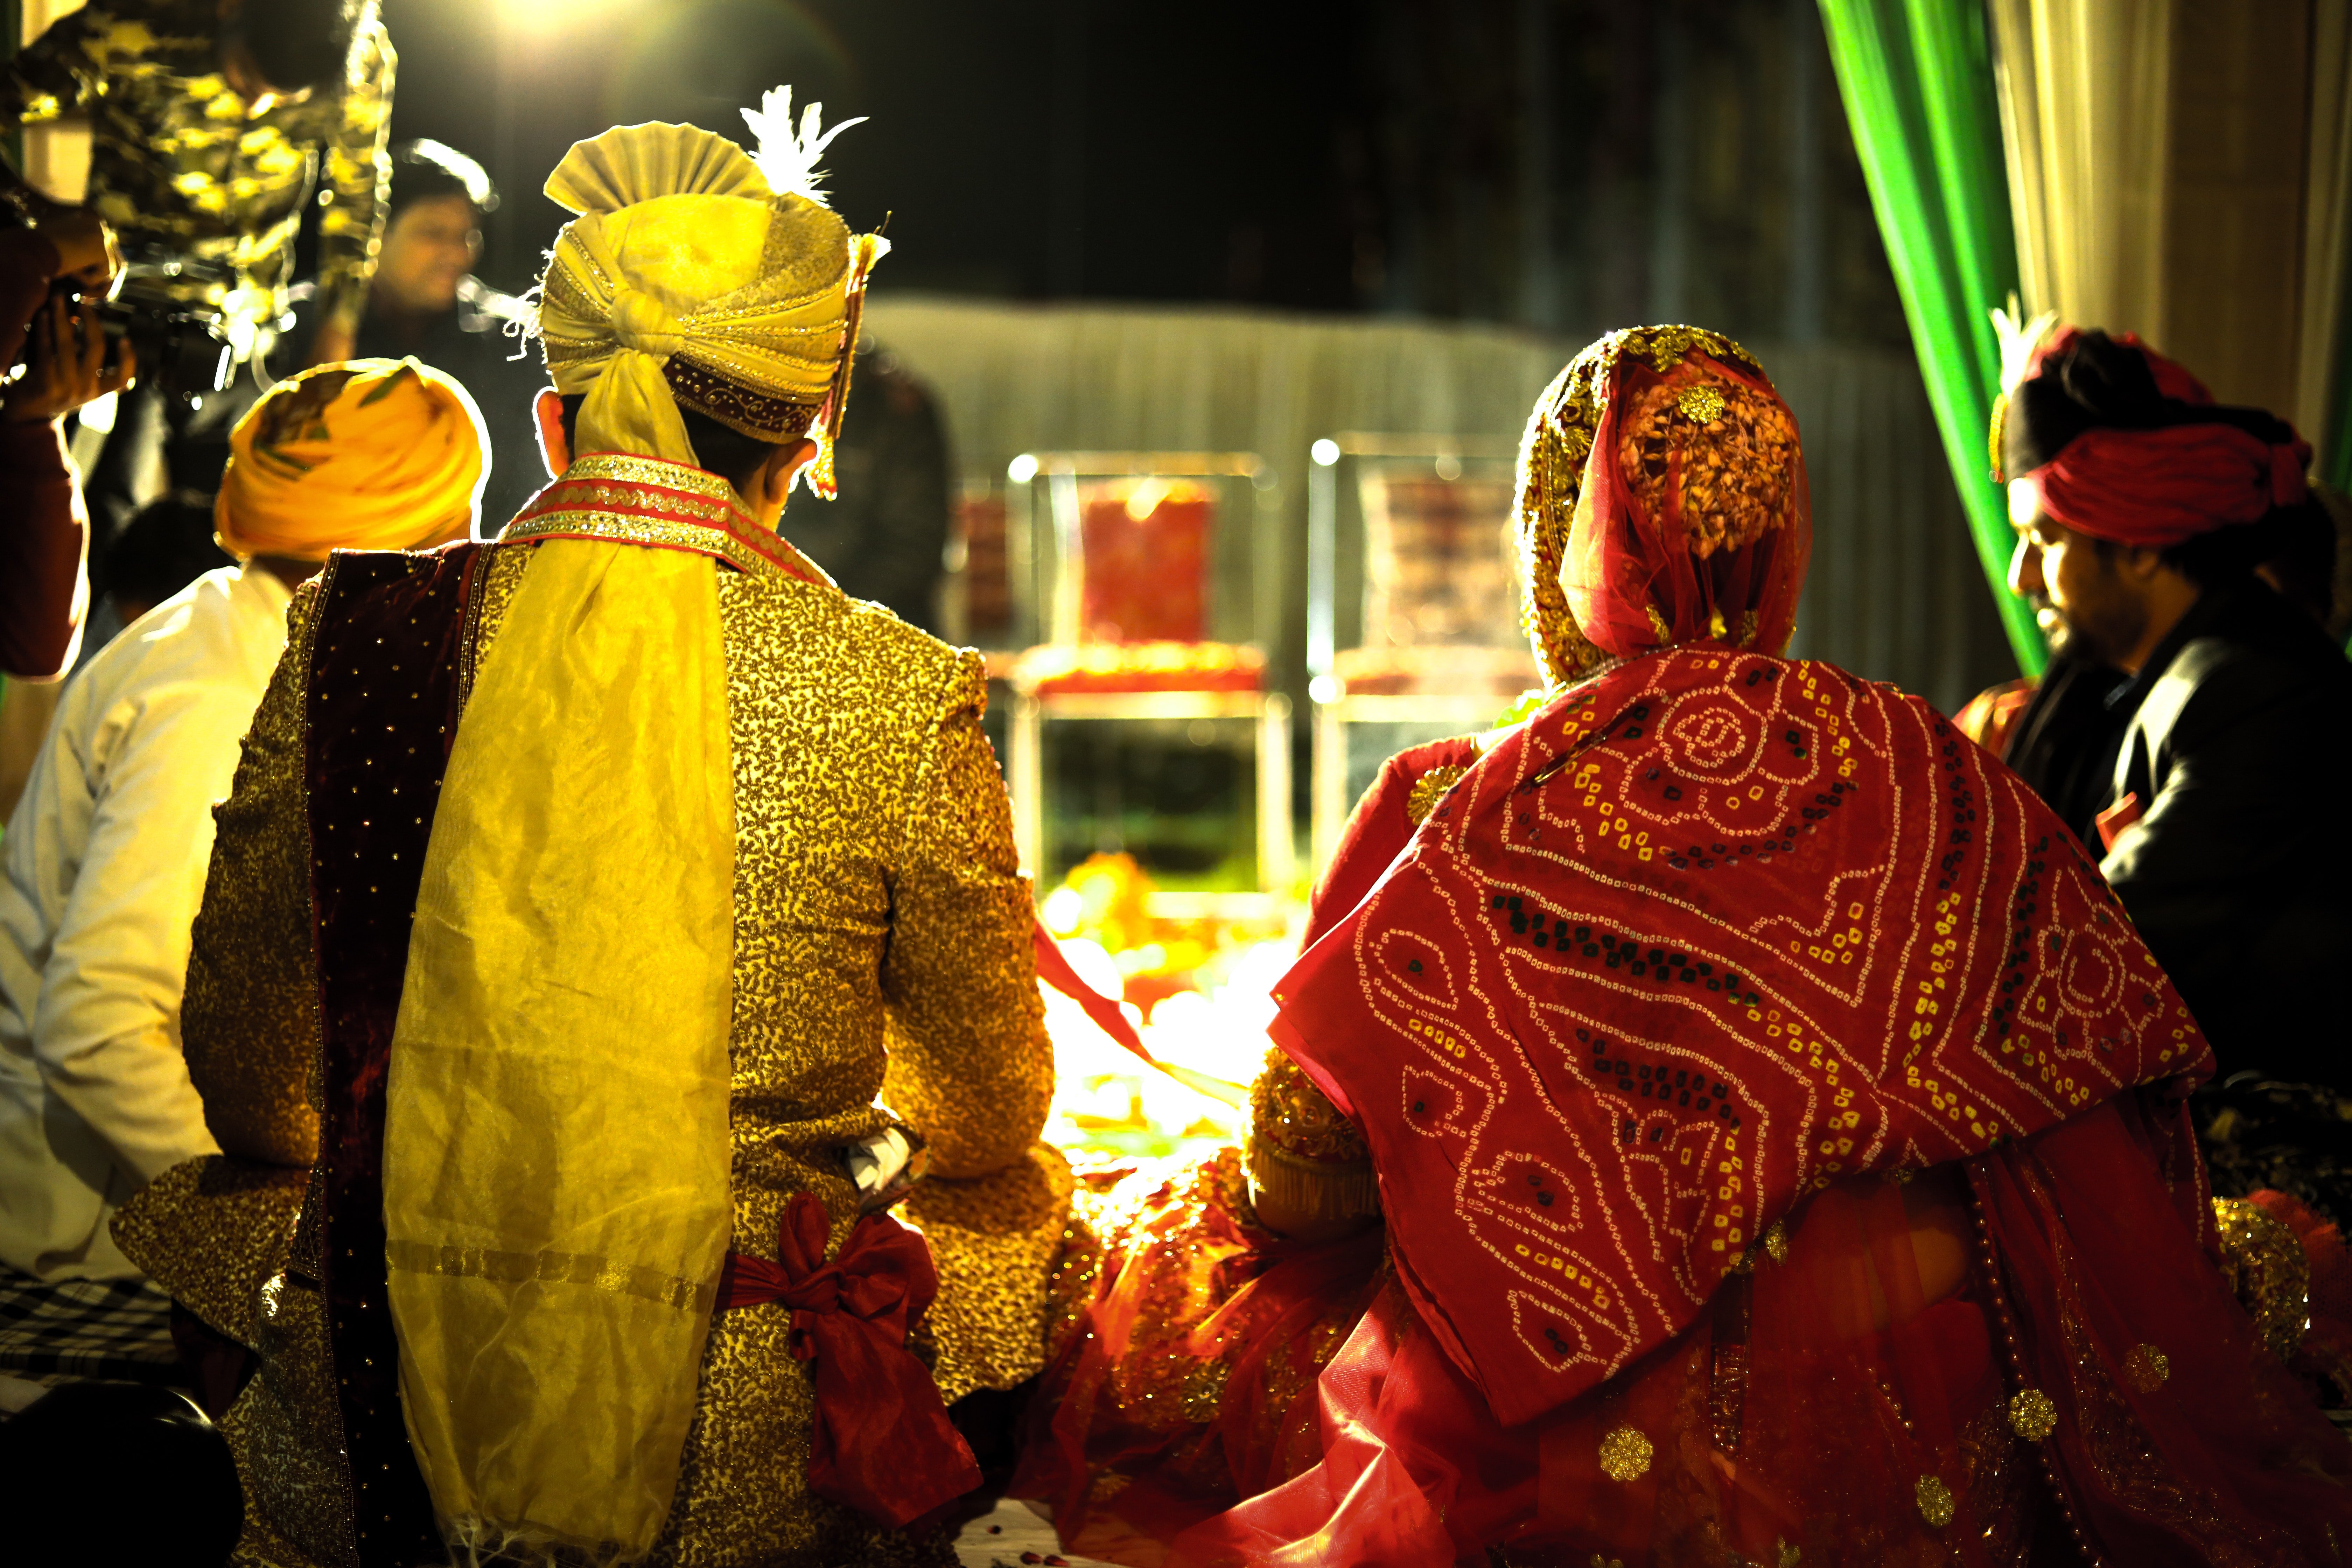 Die Brightons besuchten eine einzigartige indische Party mit Sinan und seiner Familie. | Quelle: Pexels